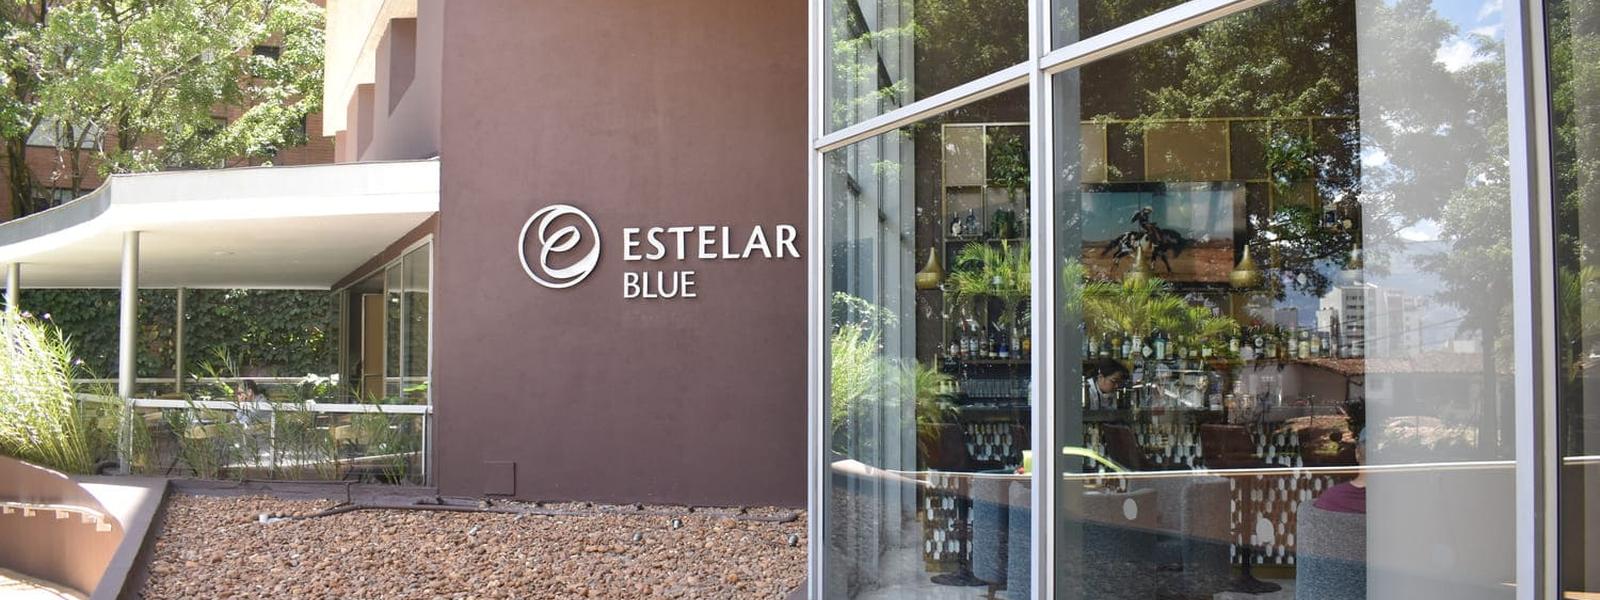 BLUE Hotel ESTELAR Blue Medellín